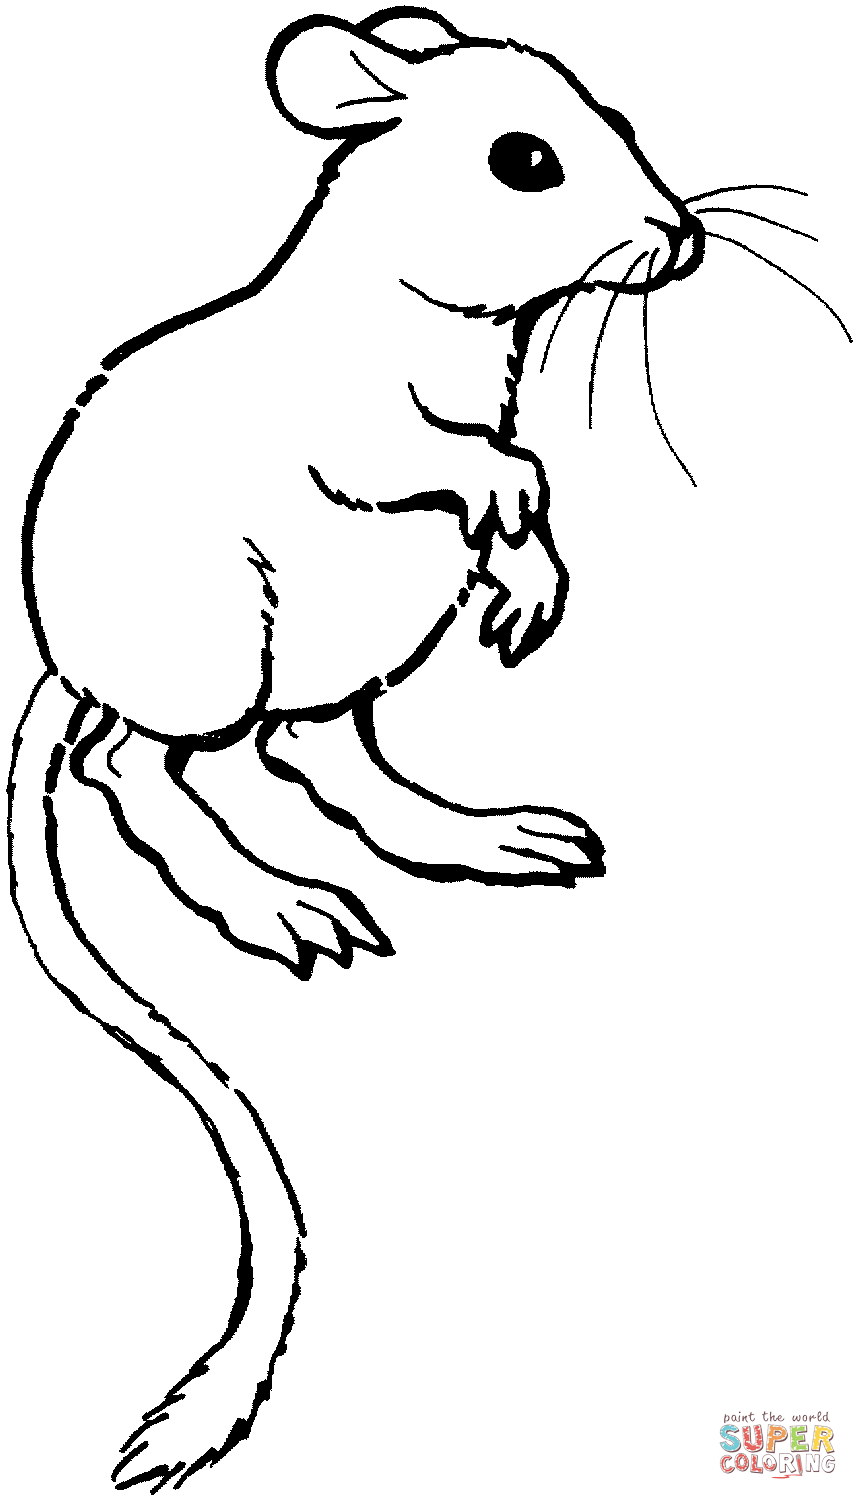 Rat coloring #8, Download drawings